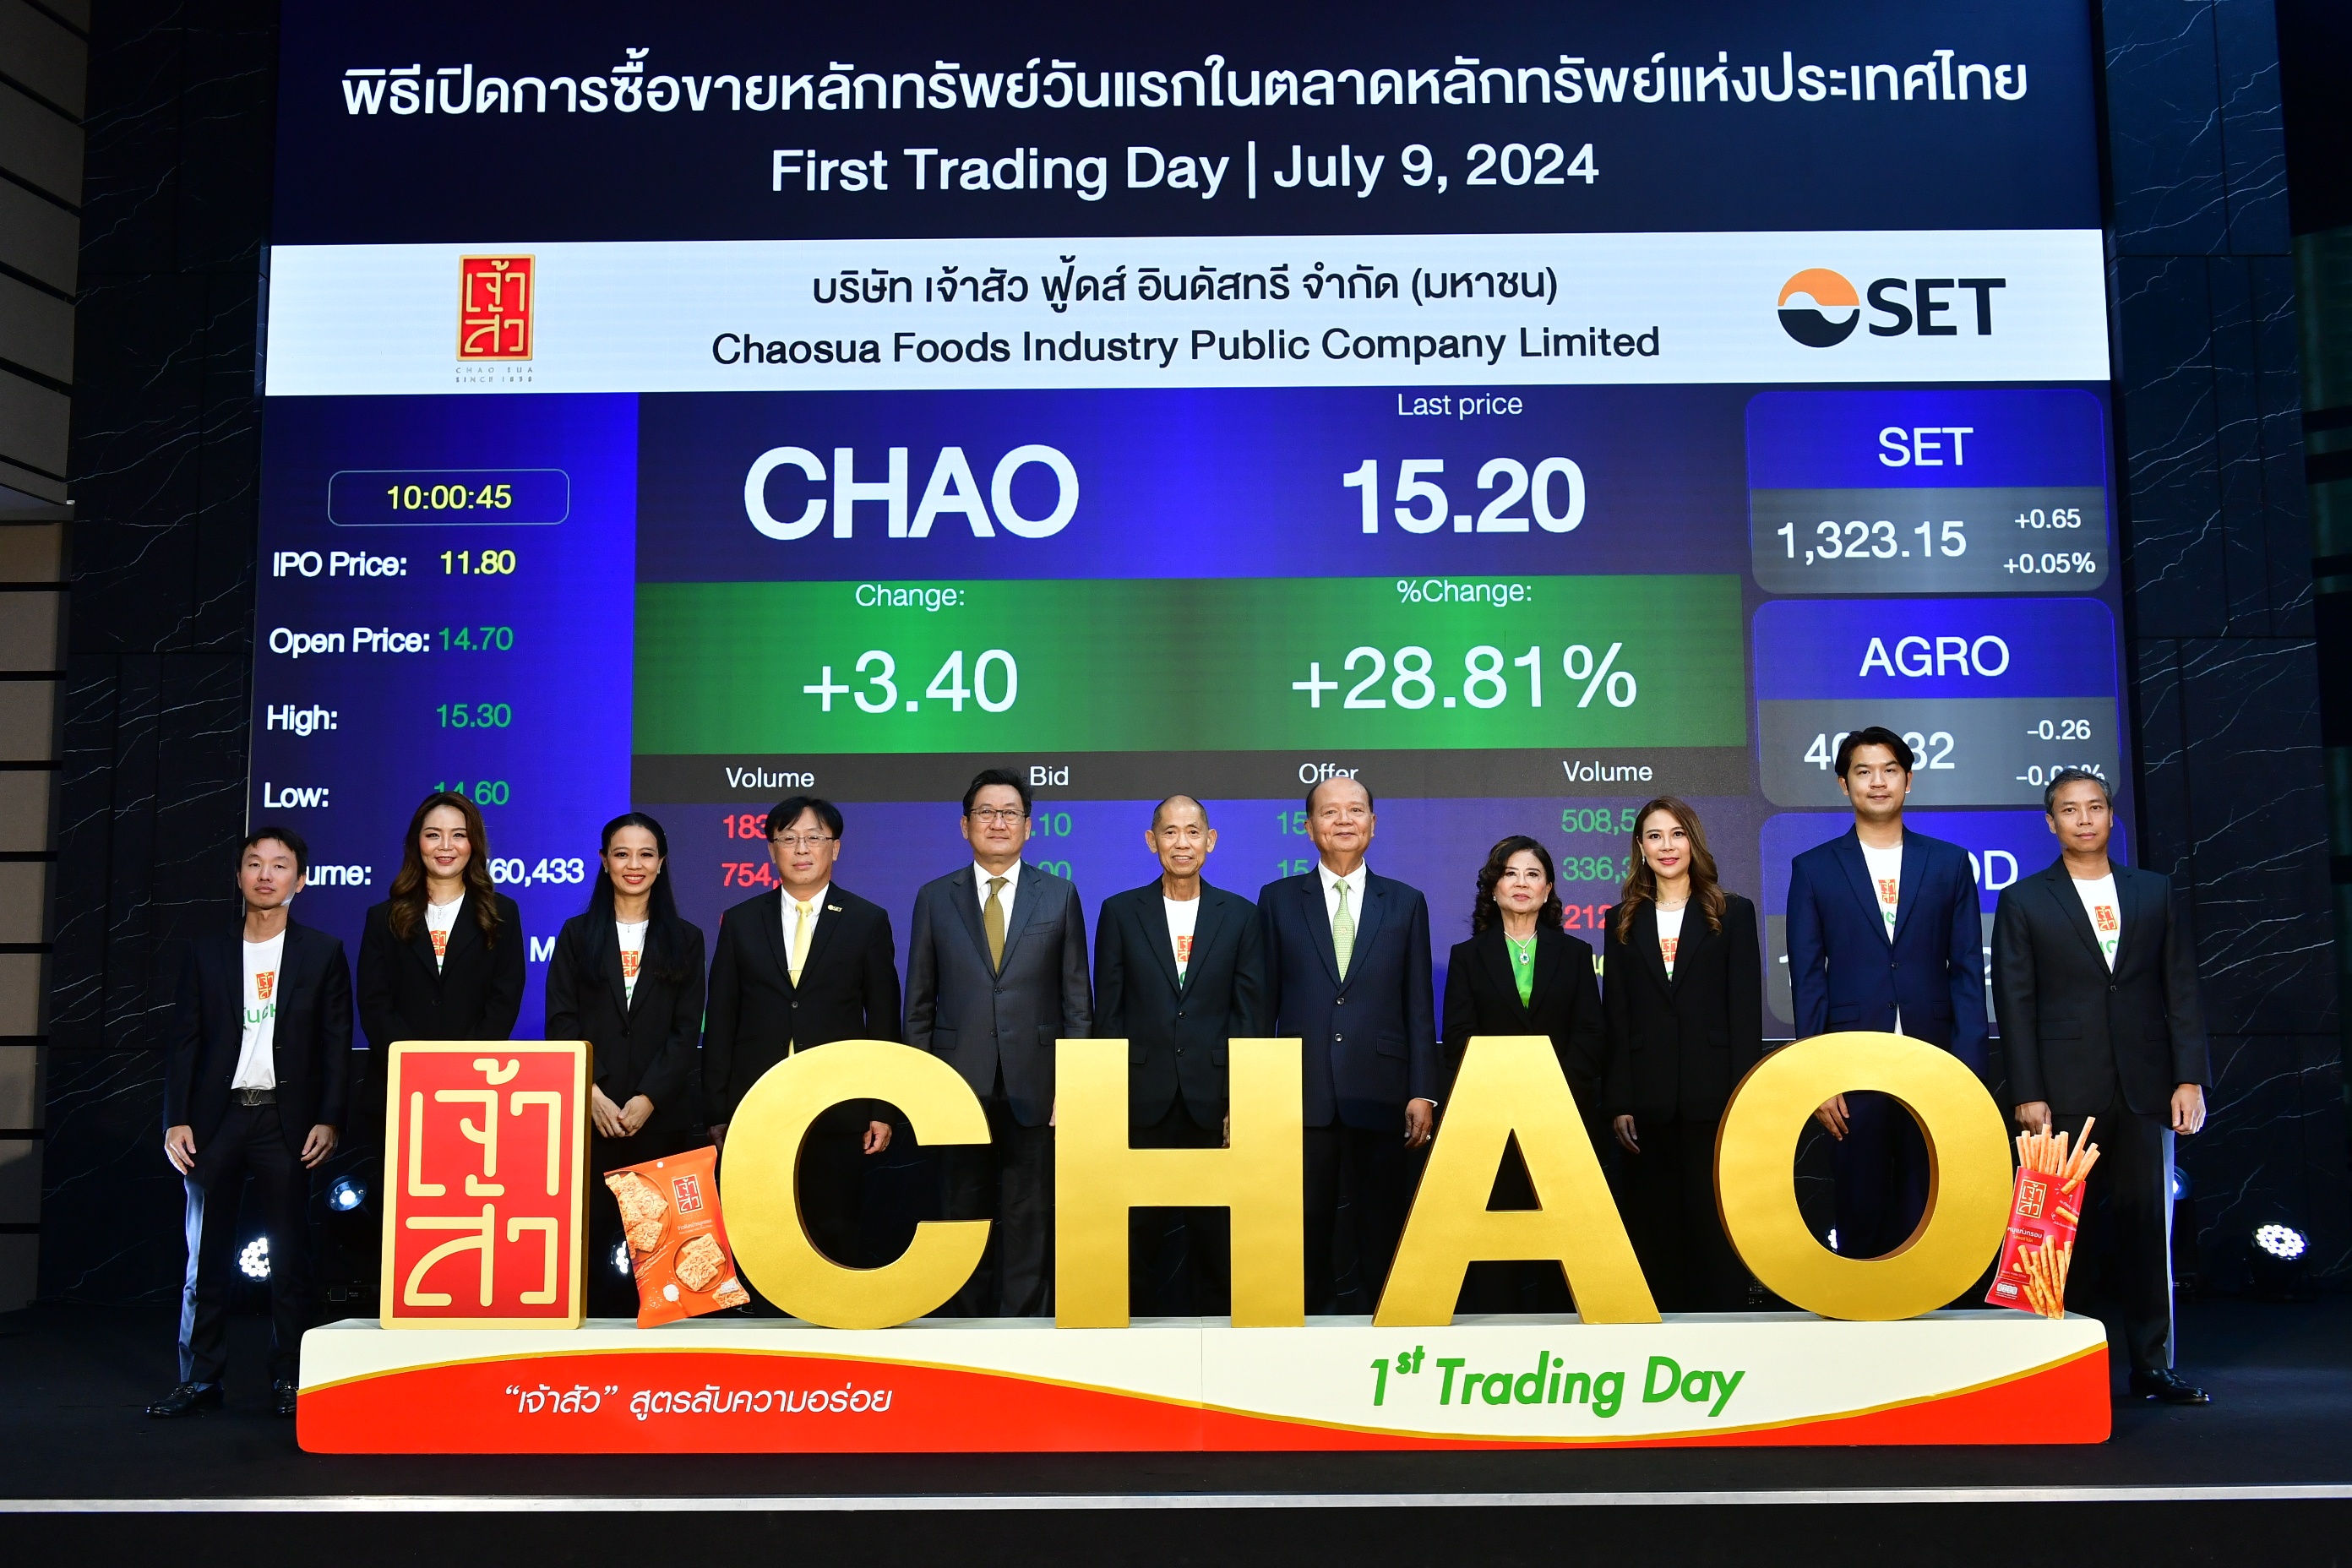 ‘เจ้าสัว’ หรือ ‘CHAO’ เปิดซื้อขายหลักทรัพย์วันแรก สูงกว่าราคา IPO 24.57%